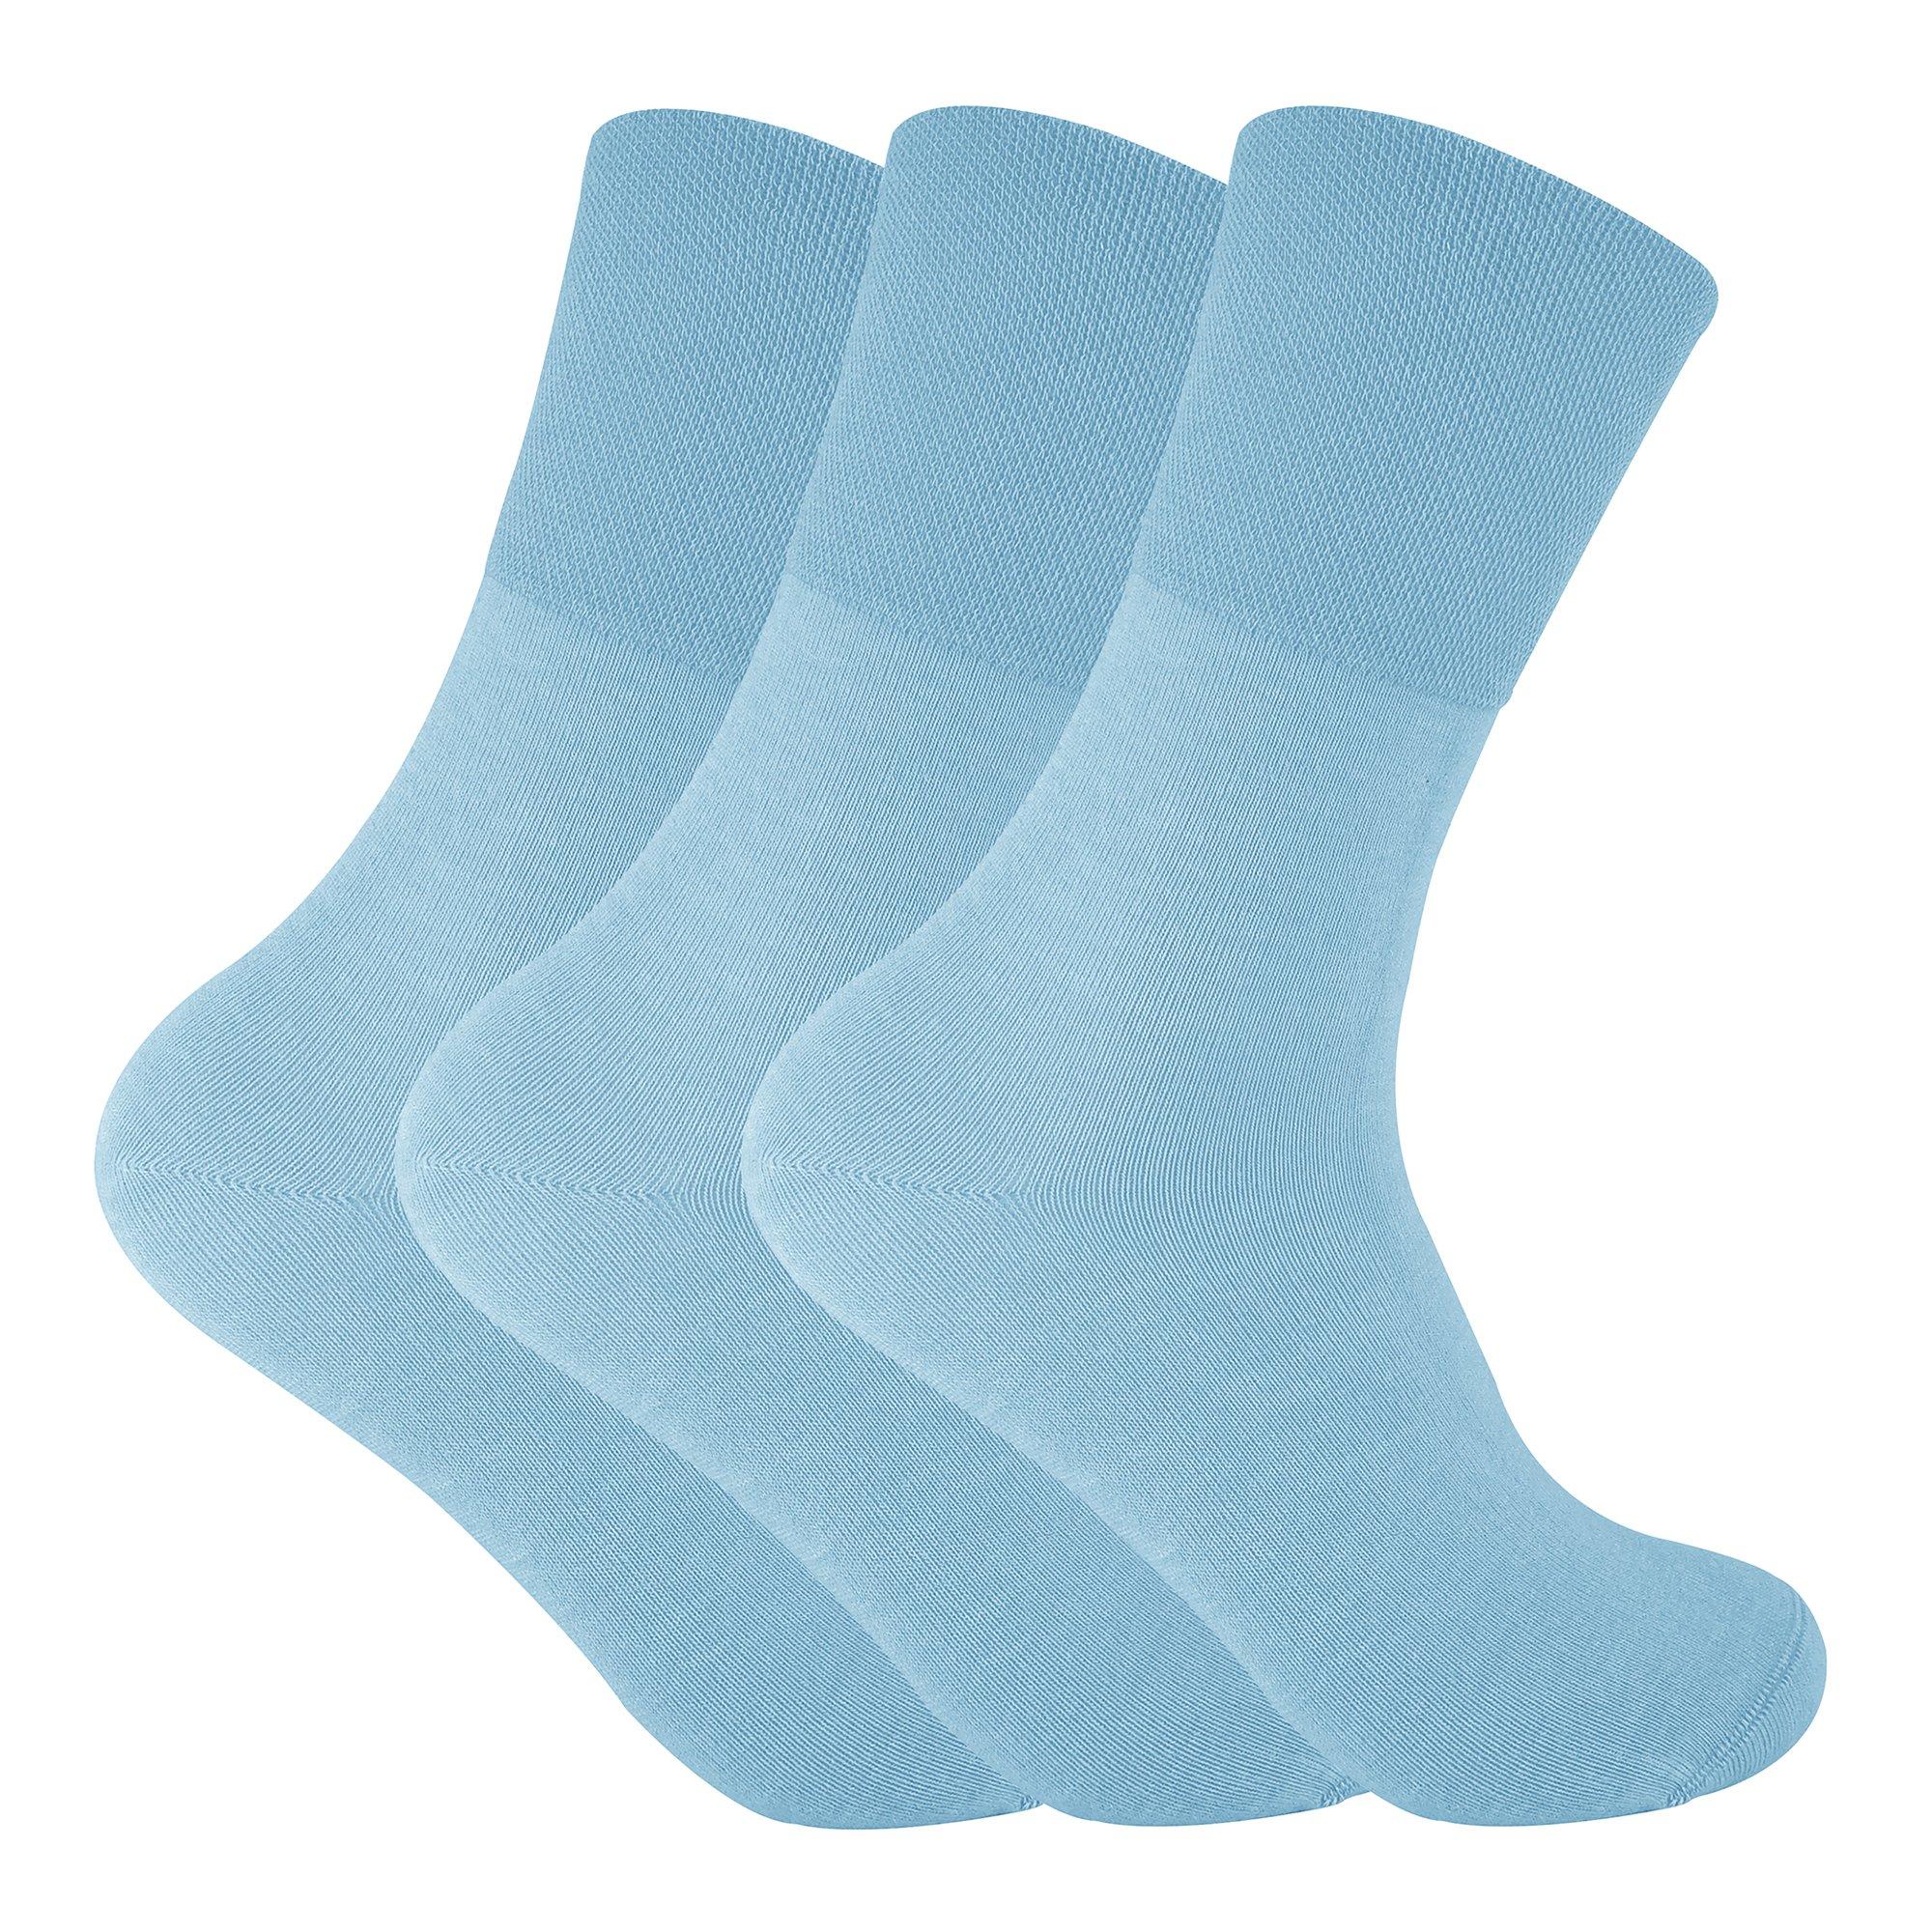 3 Pairs Non Elastic Thermal Diabetic Socks for Poor Circulation